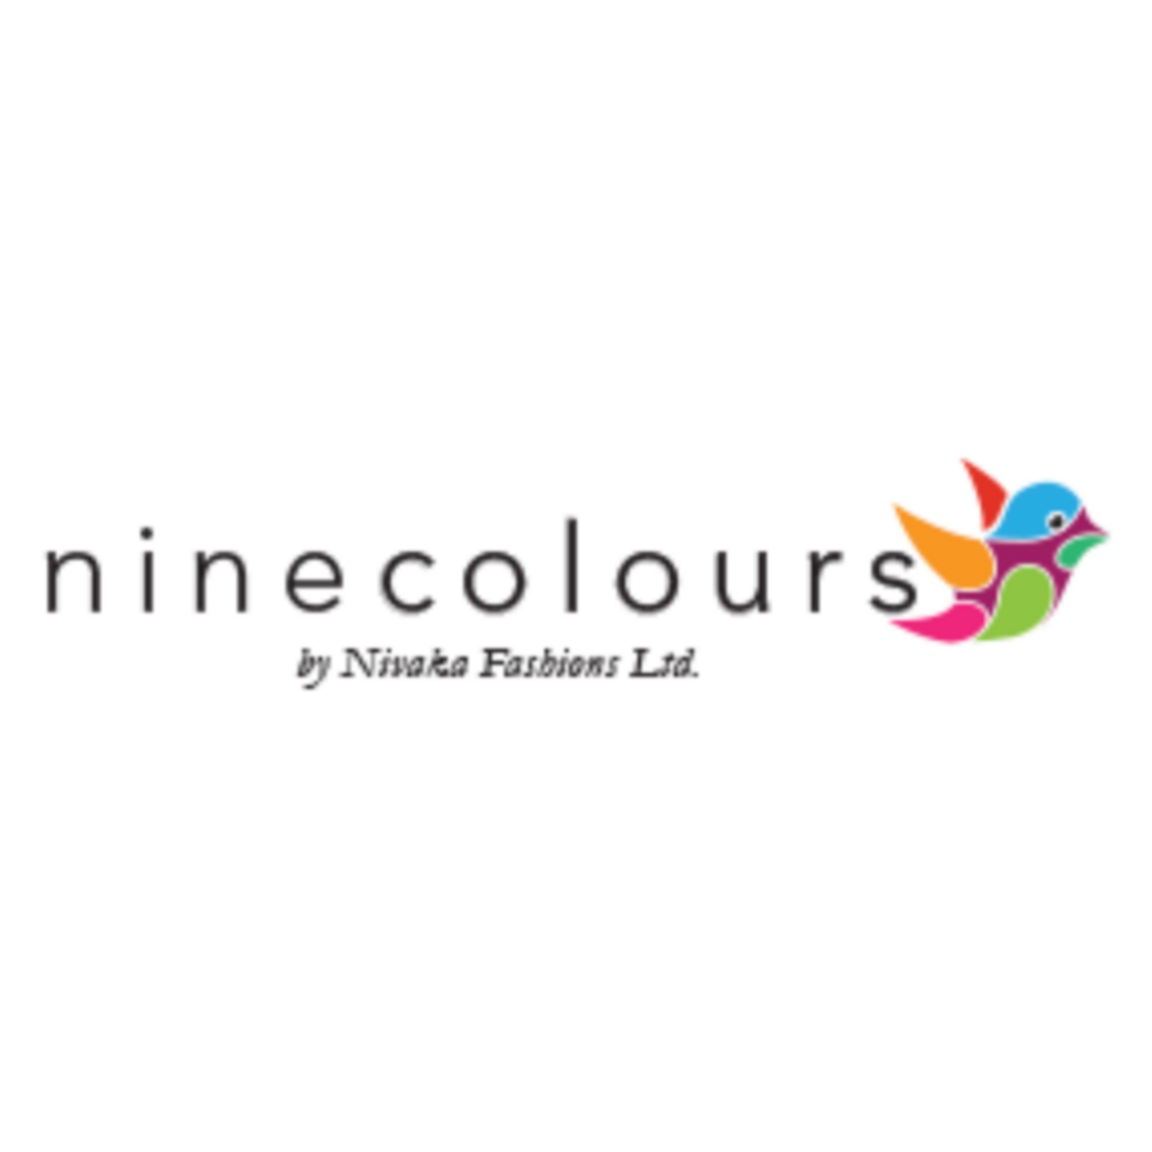 Ninecolours.com